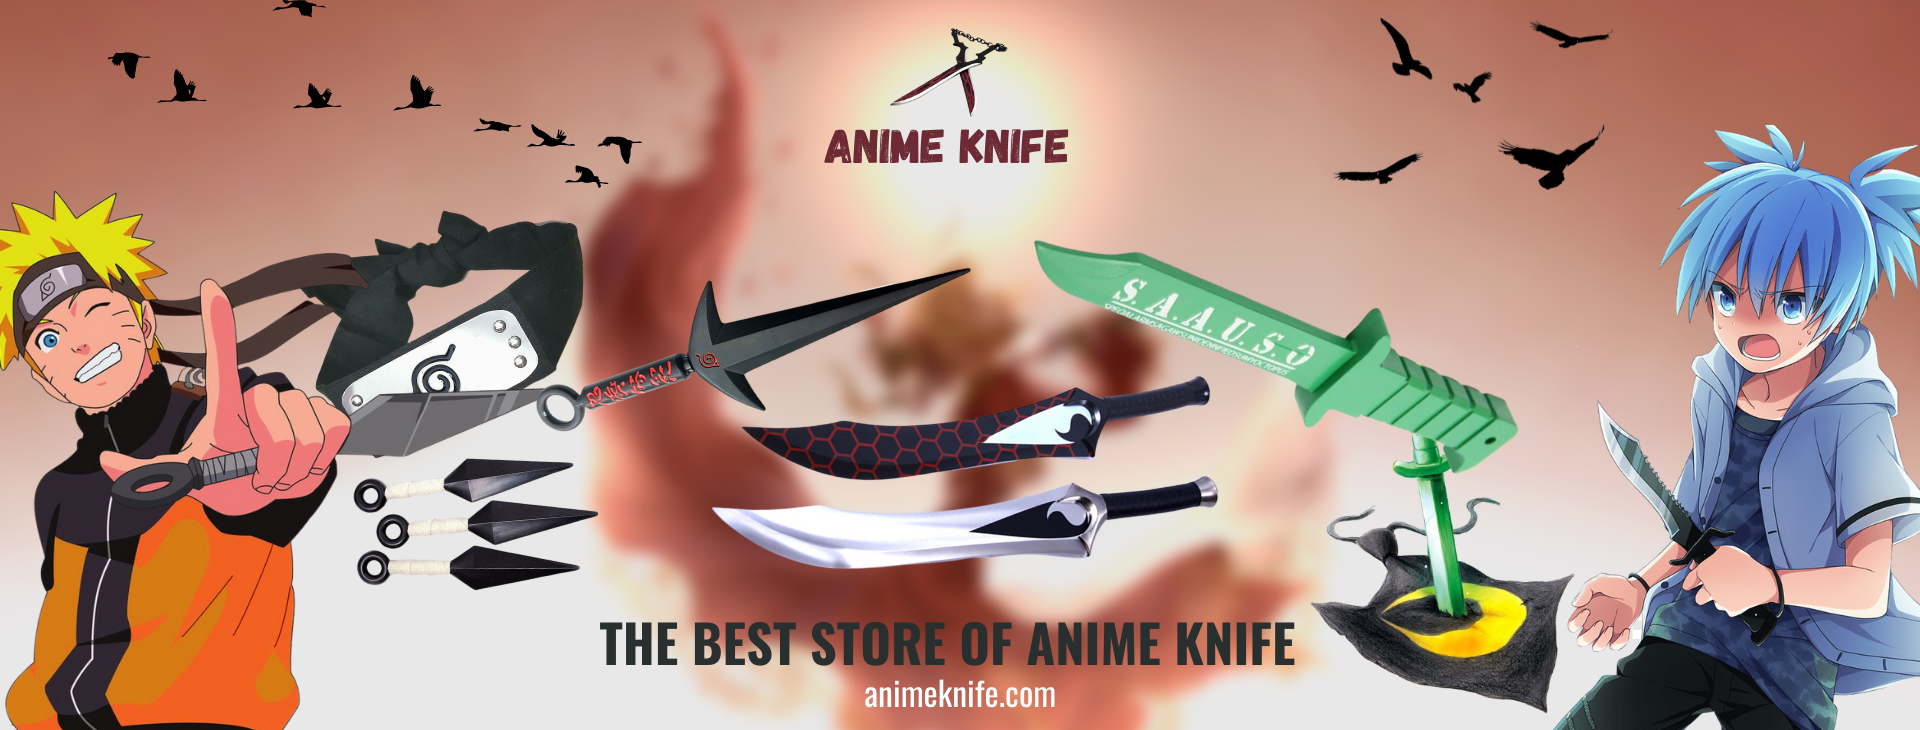 Anime Knife Web Banner - Anime Knife